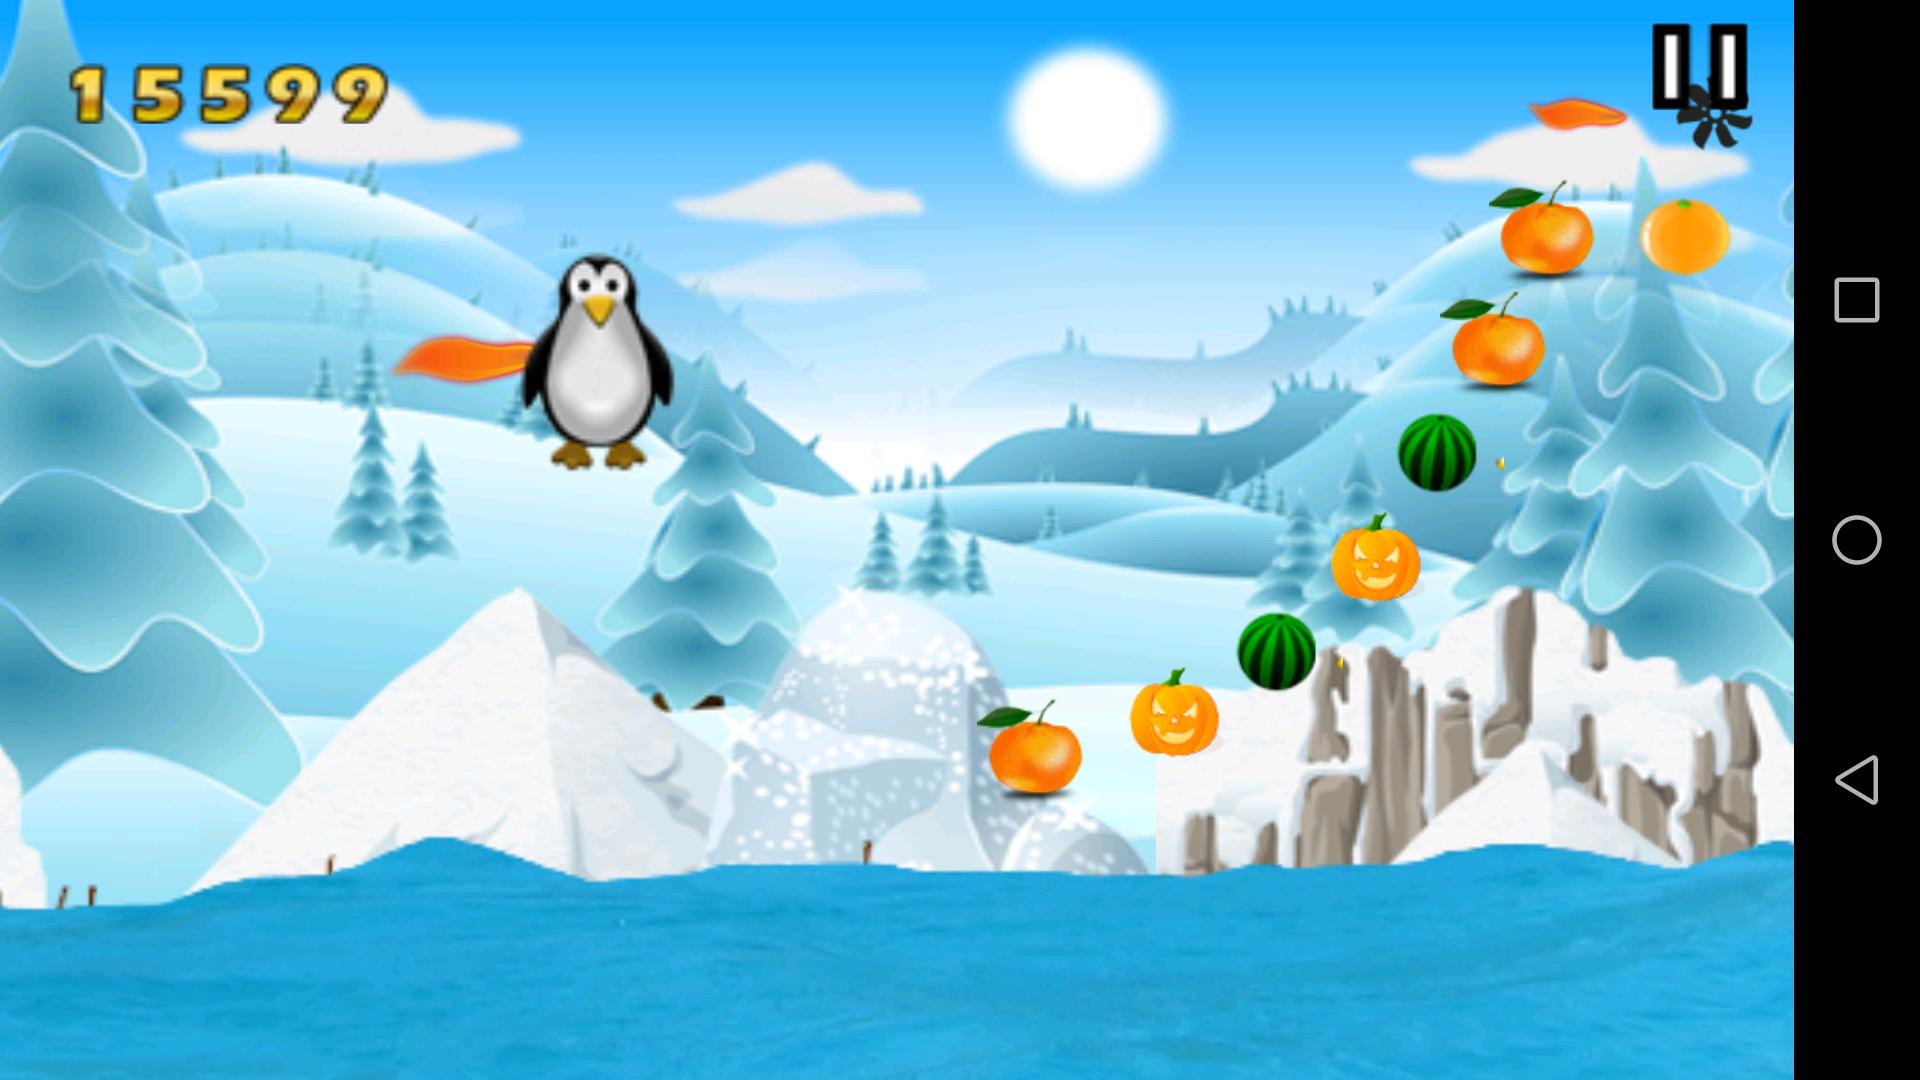 Игра бить пингвина. Пингвин игра виндовс 10. Зимний фон игры Пингвин. Программа для игры Пингвин. Игра Пингвин по льду прыгает и собирает монетки.